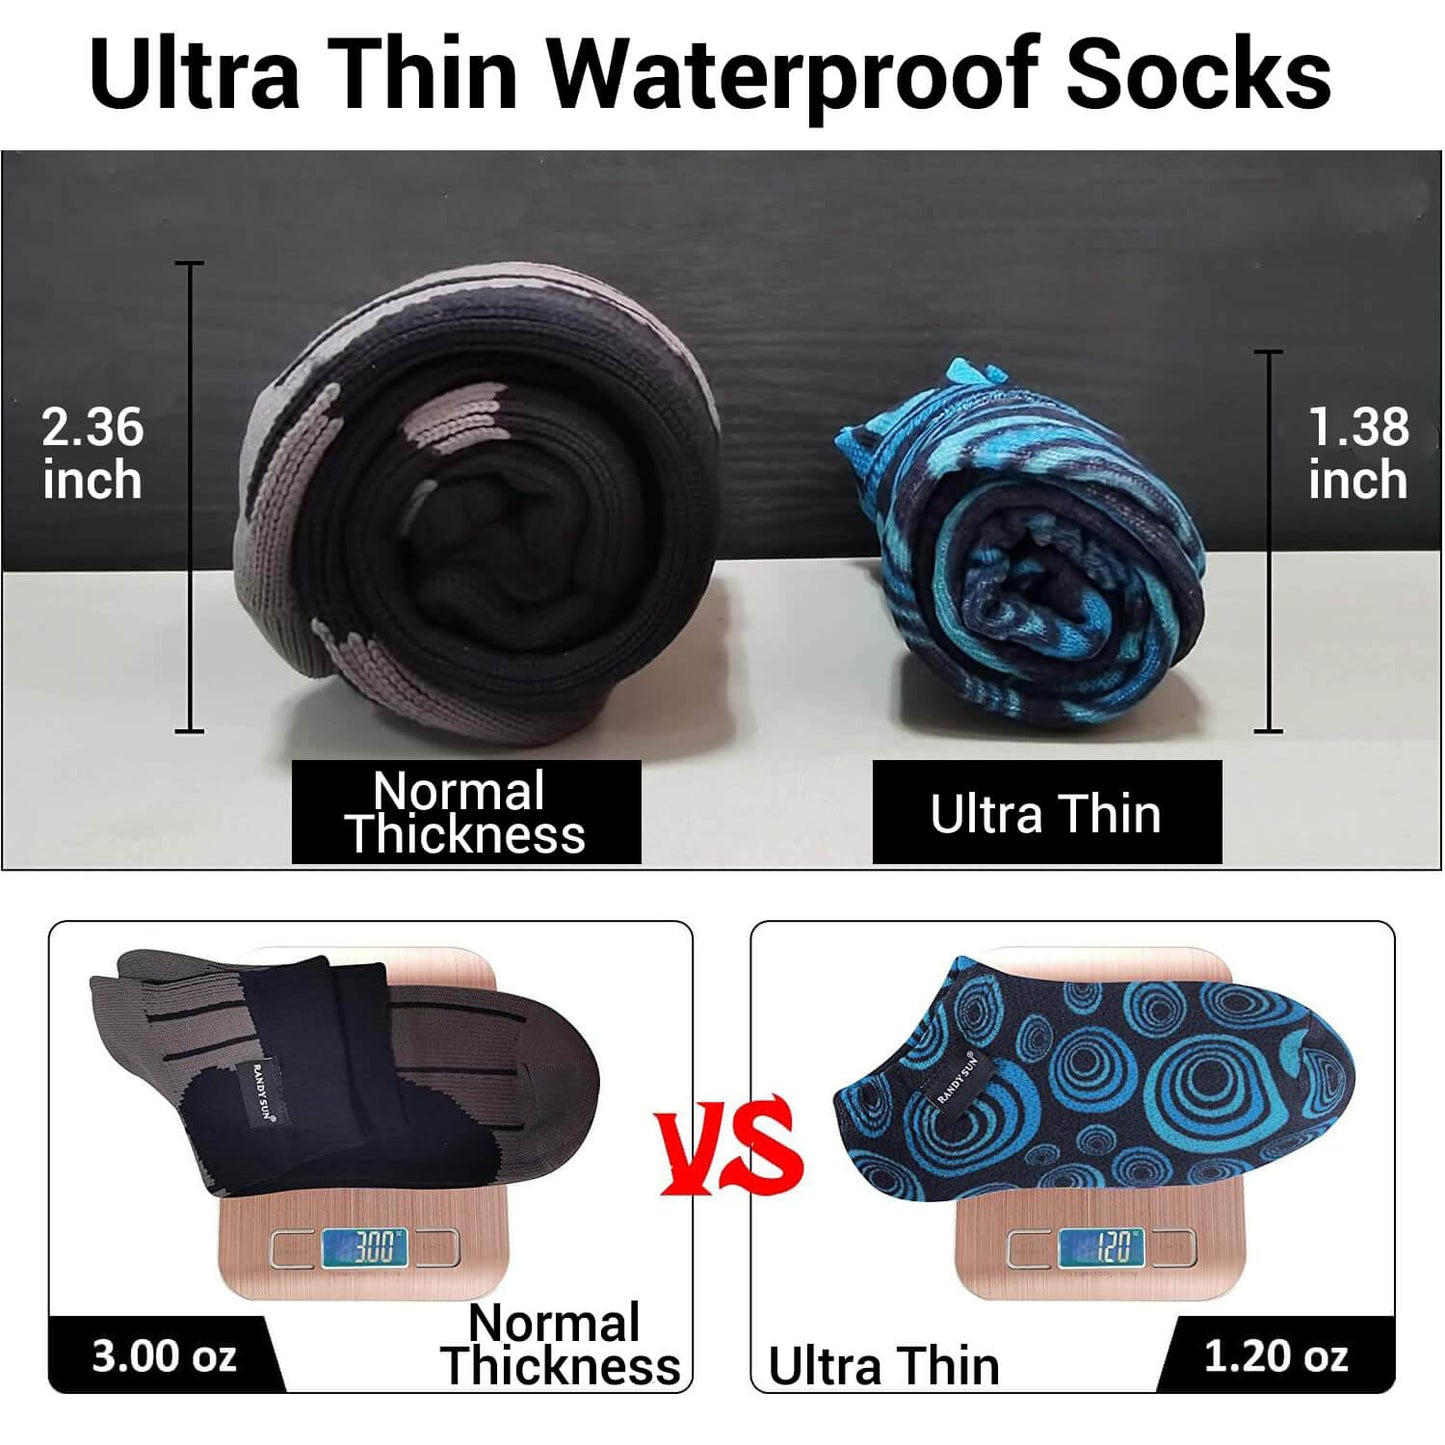 ultra thin waterproof socks